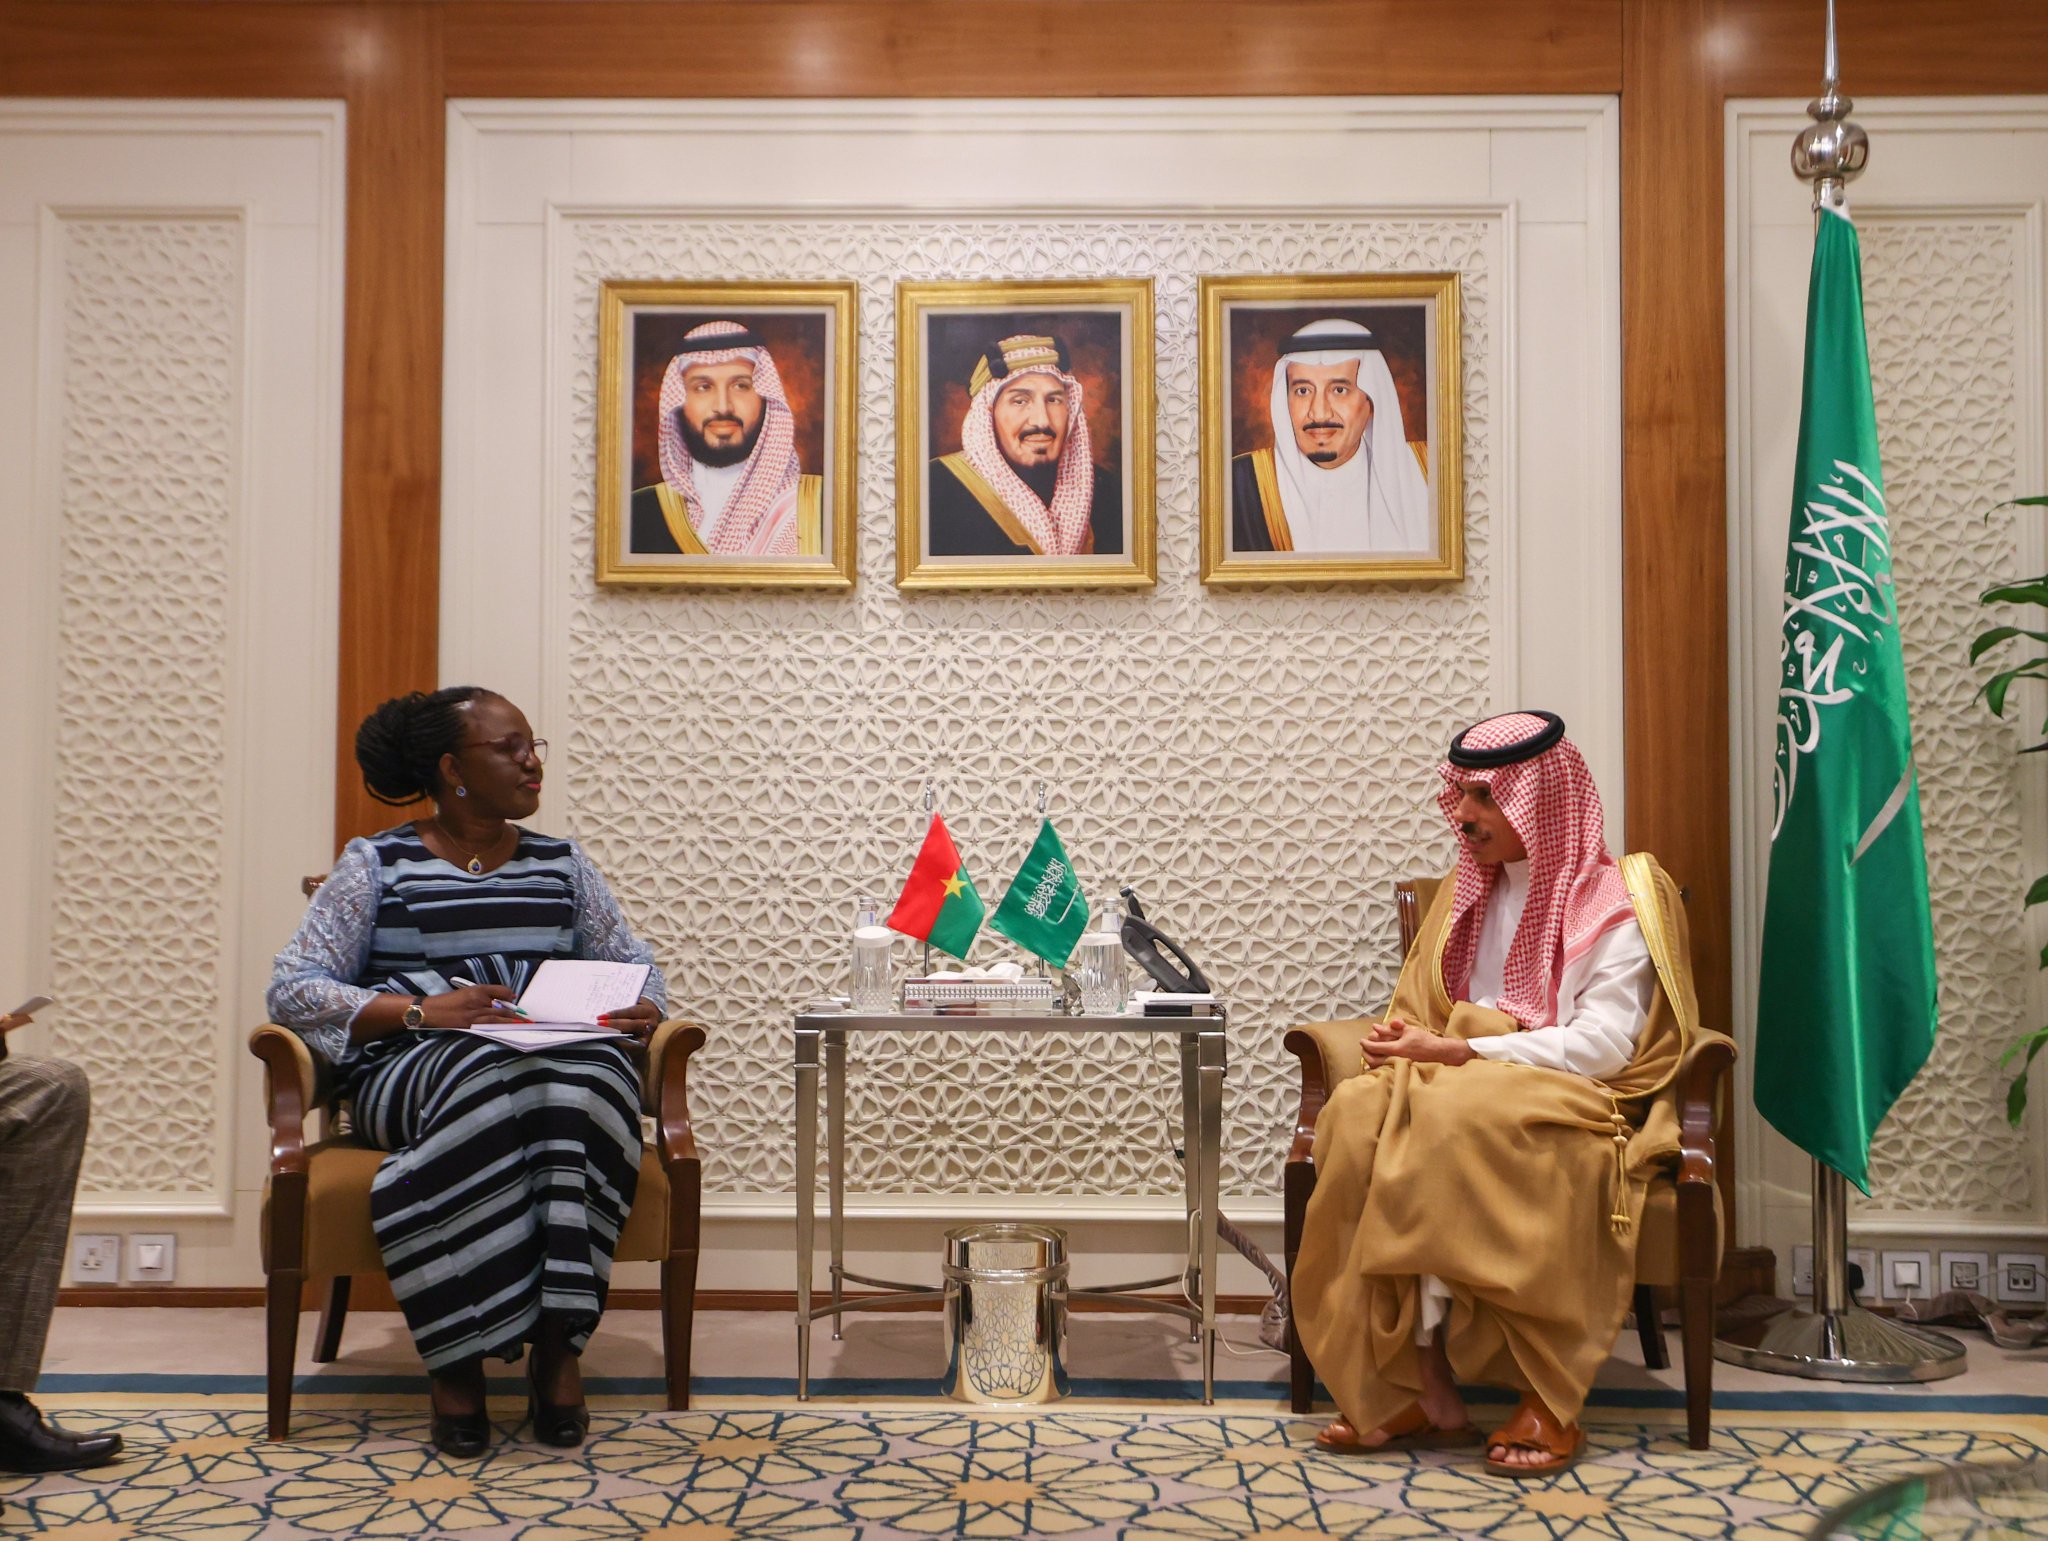 الملك سلمان يتلقى رسالة شفهية من رئيس بوركينا فاسو